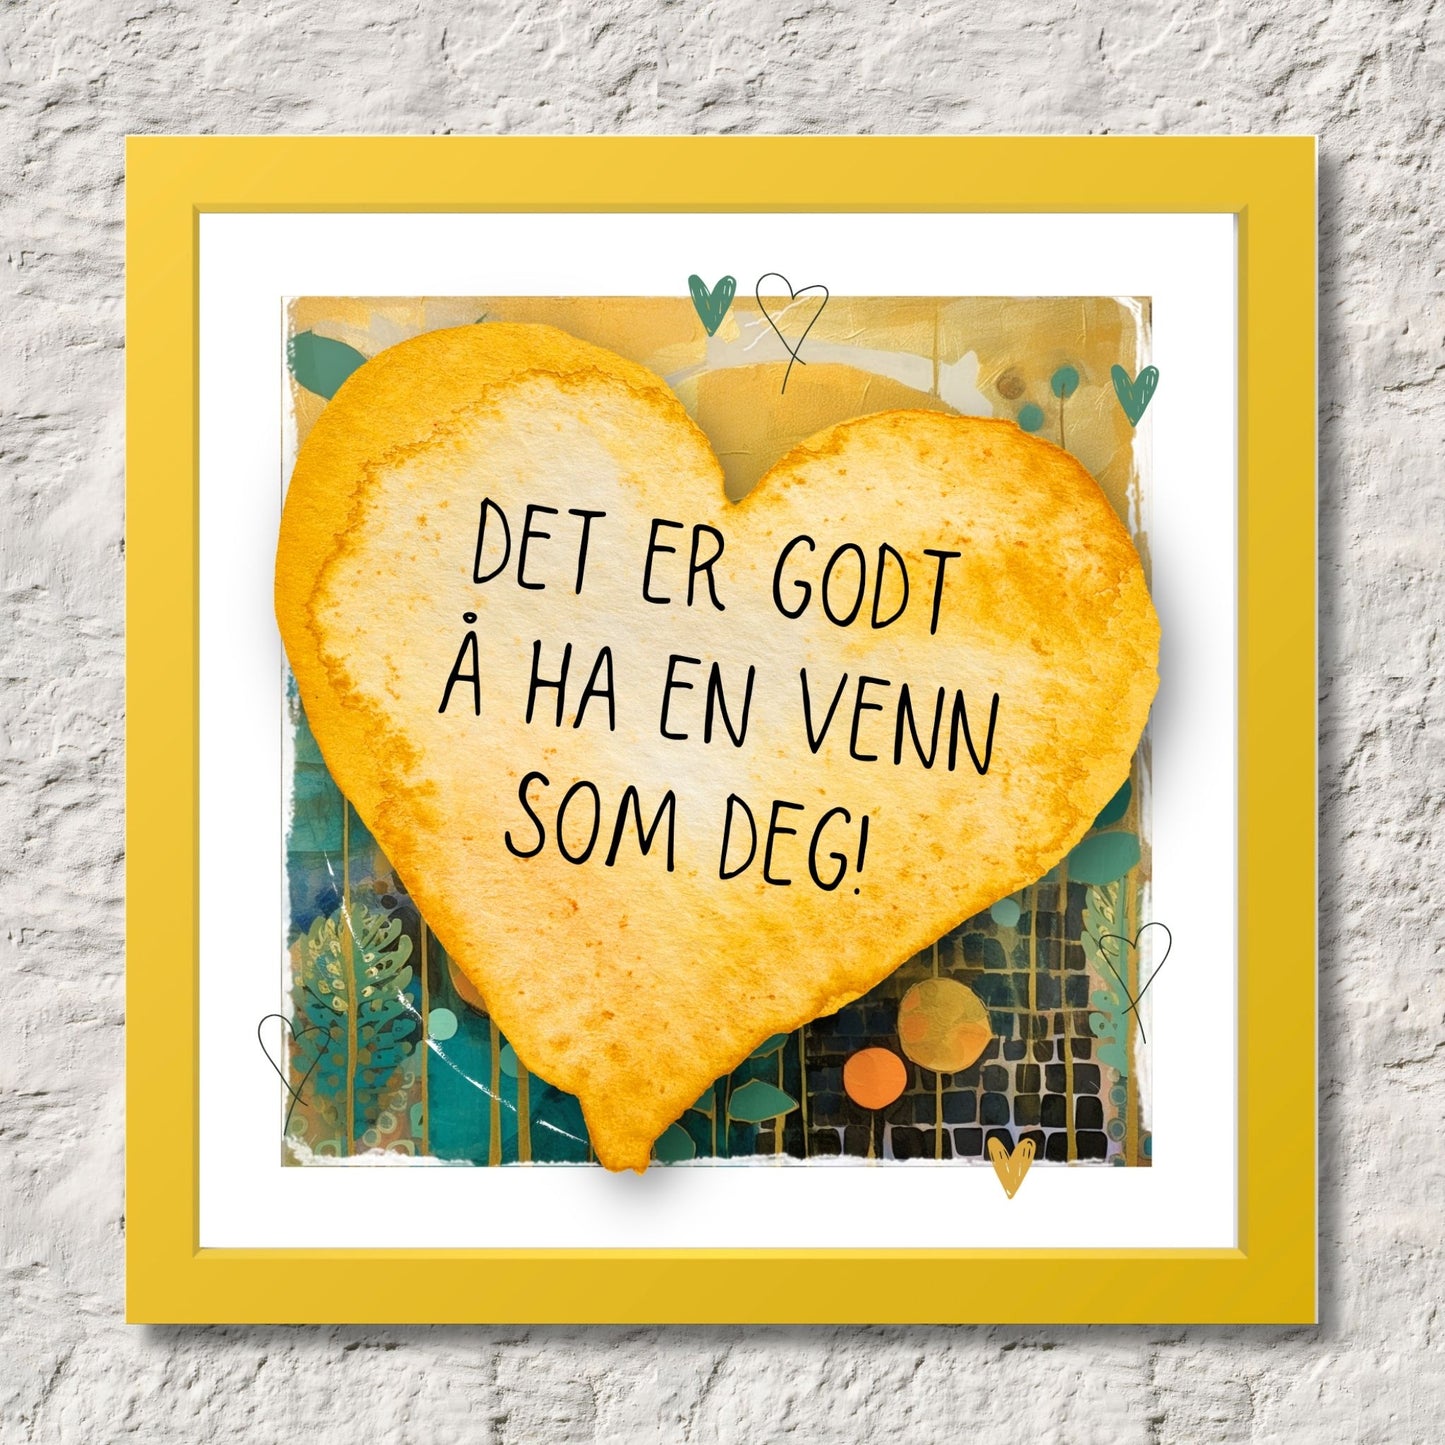 Plakat med lysegult hjerte og tekst "Det er godt å ha en venn som deg" - og et motiv med farger i grønn, gul og oransje. Med hvit kant på 1,5 cm. Illustrasjon viser plakat i gul ramme.